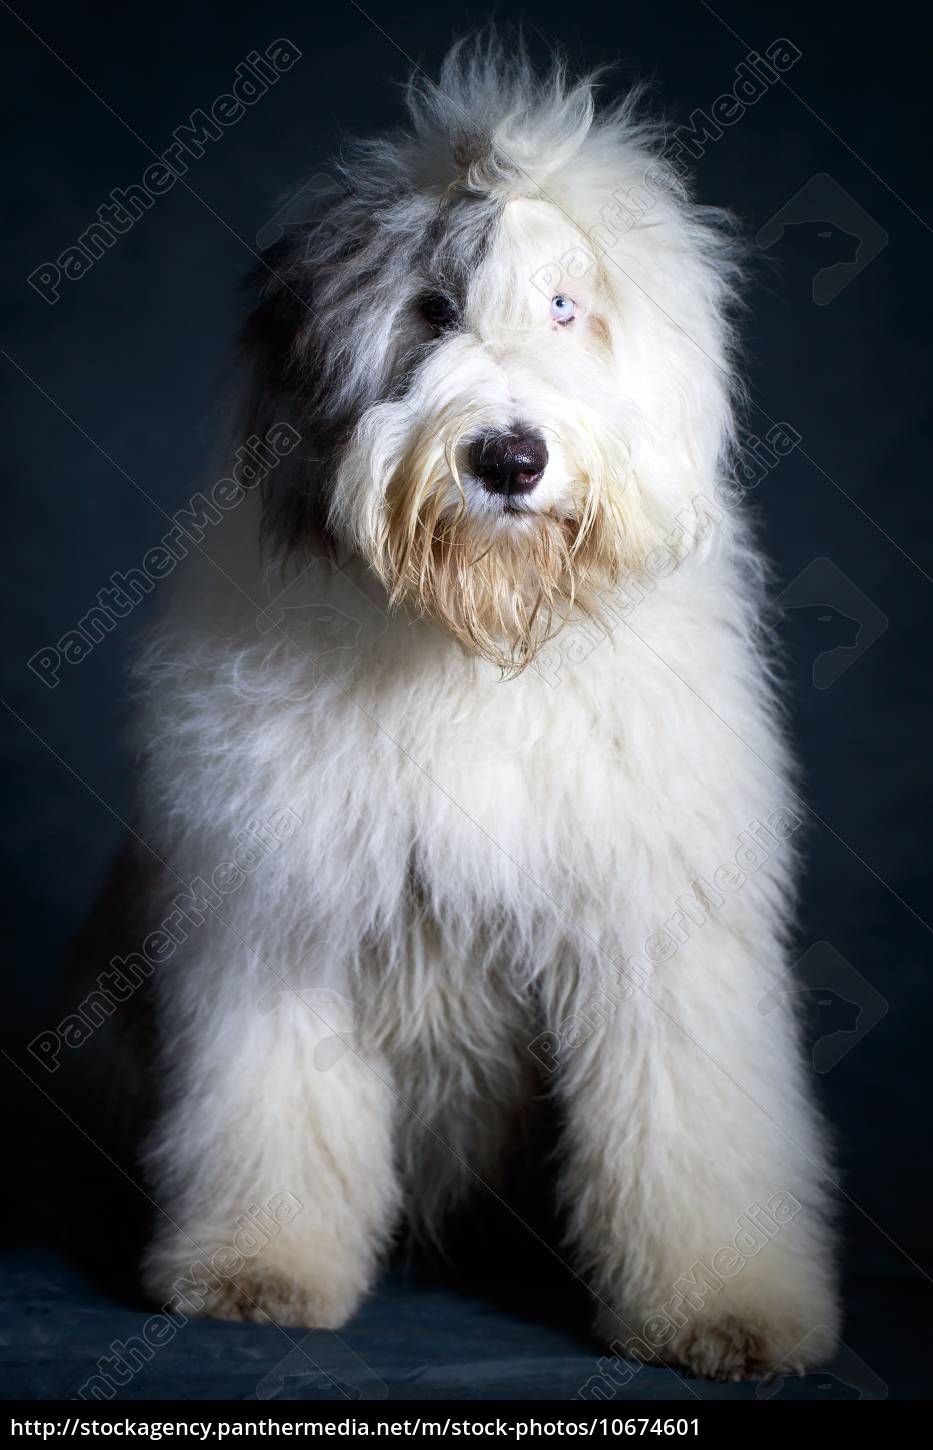 Cachorro Bobtail: características e fotos